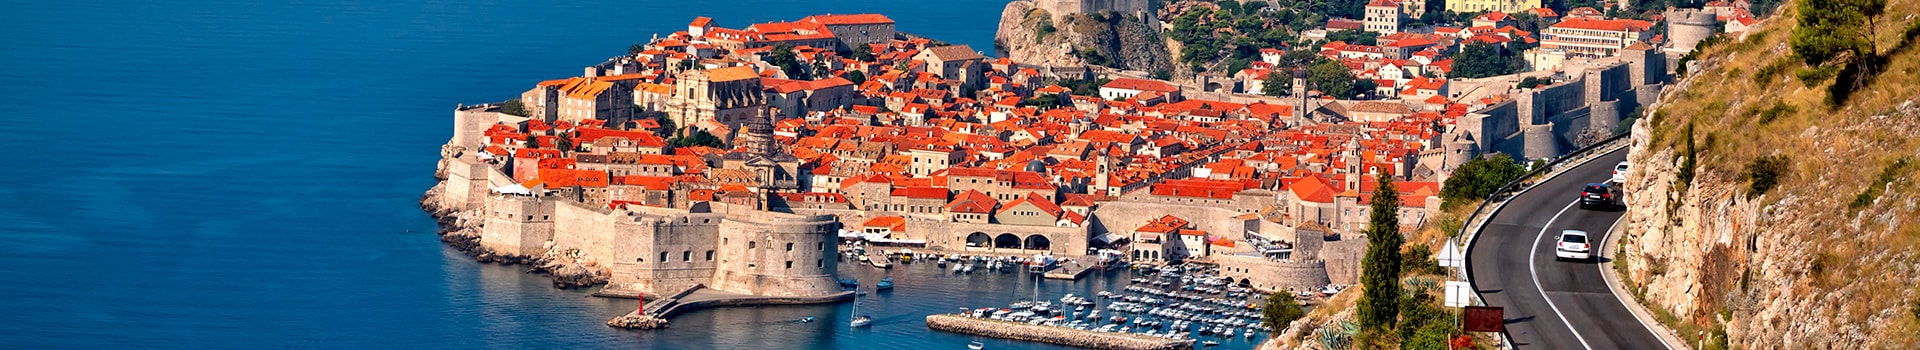 Málaga - Dubrovnik